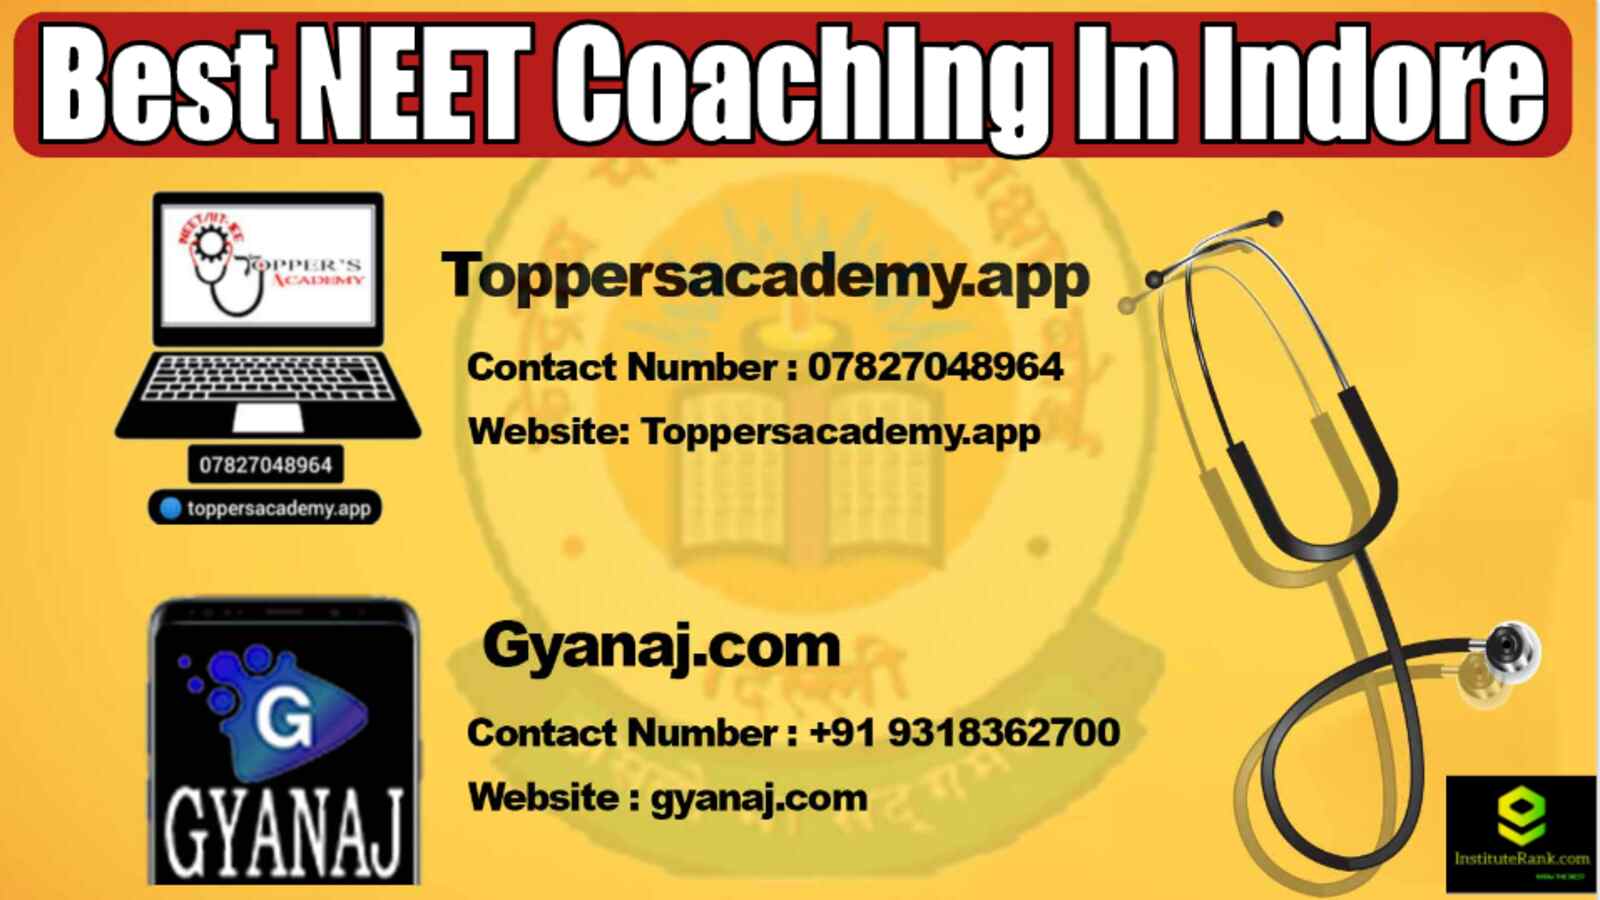 Best NEET Coaching in Indore 2022